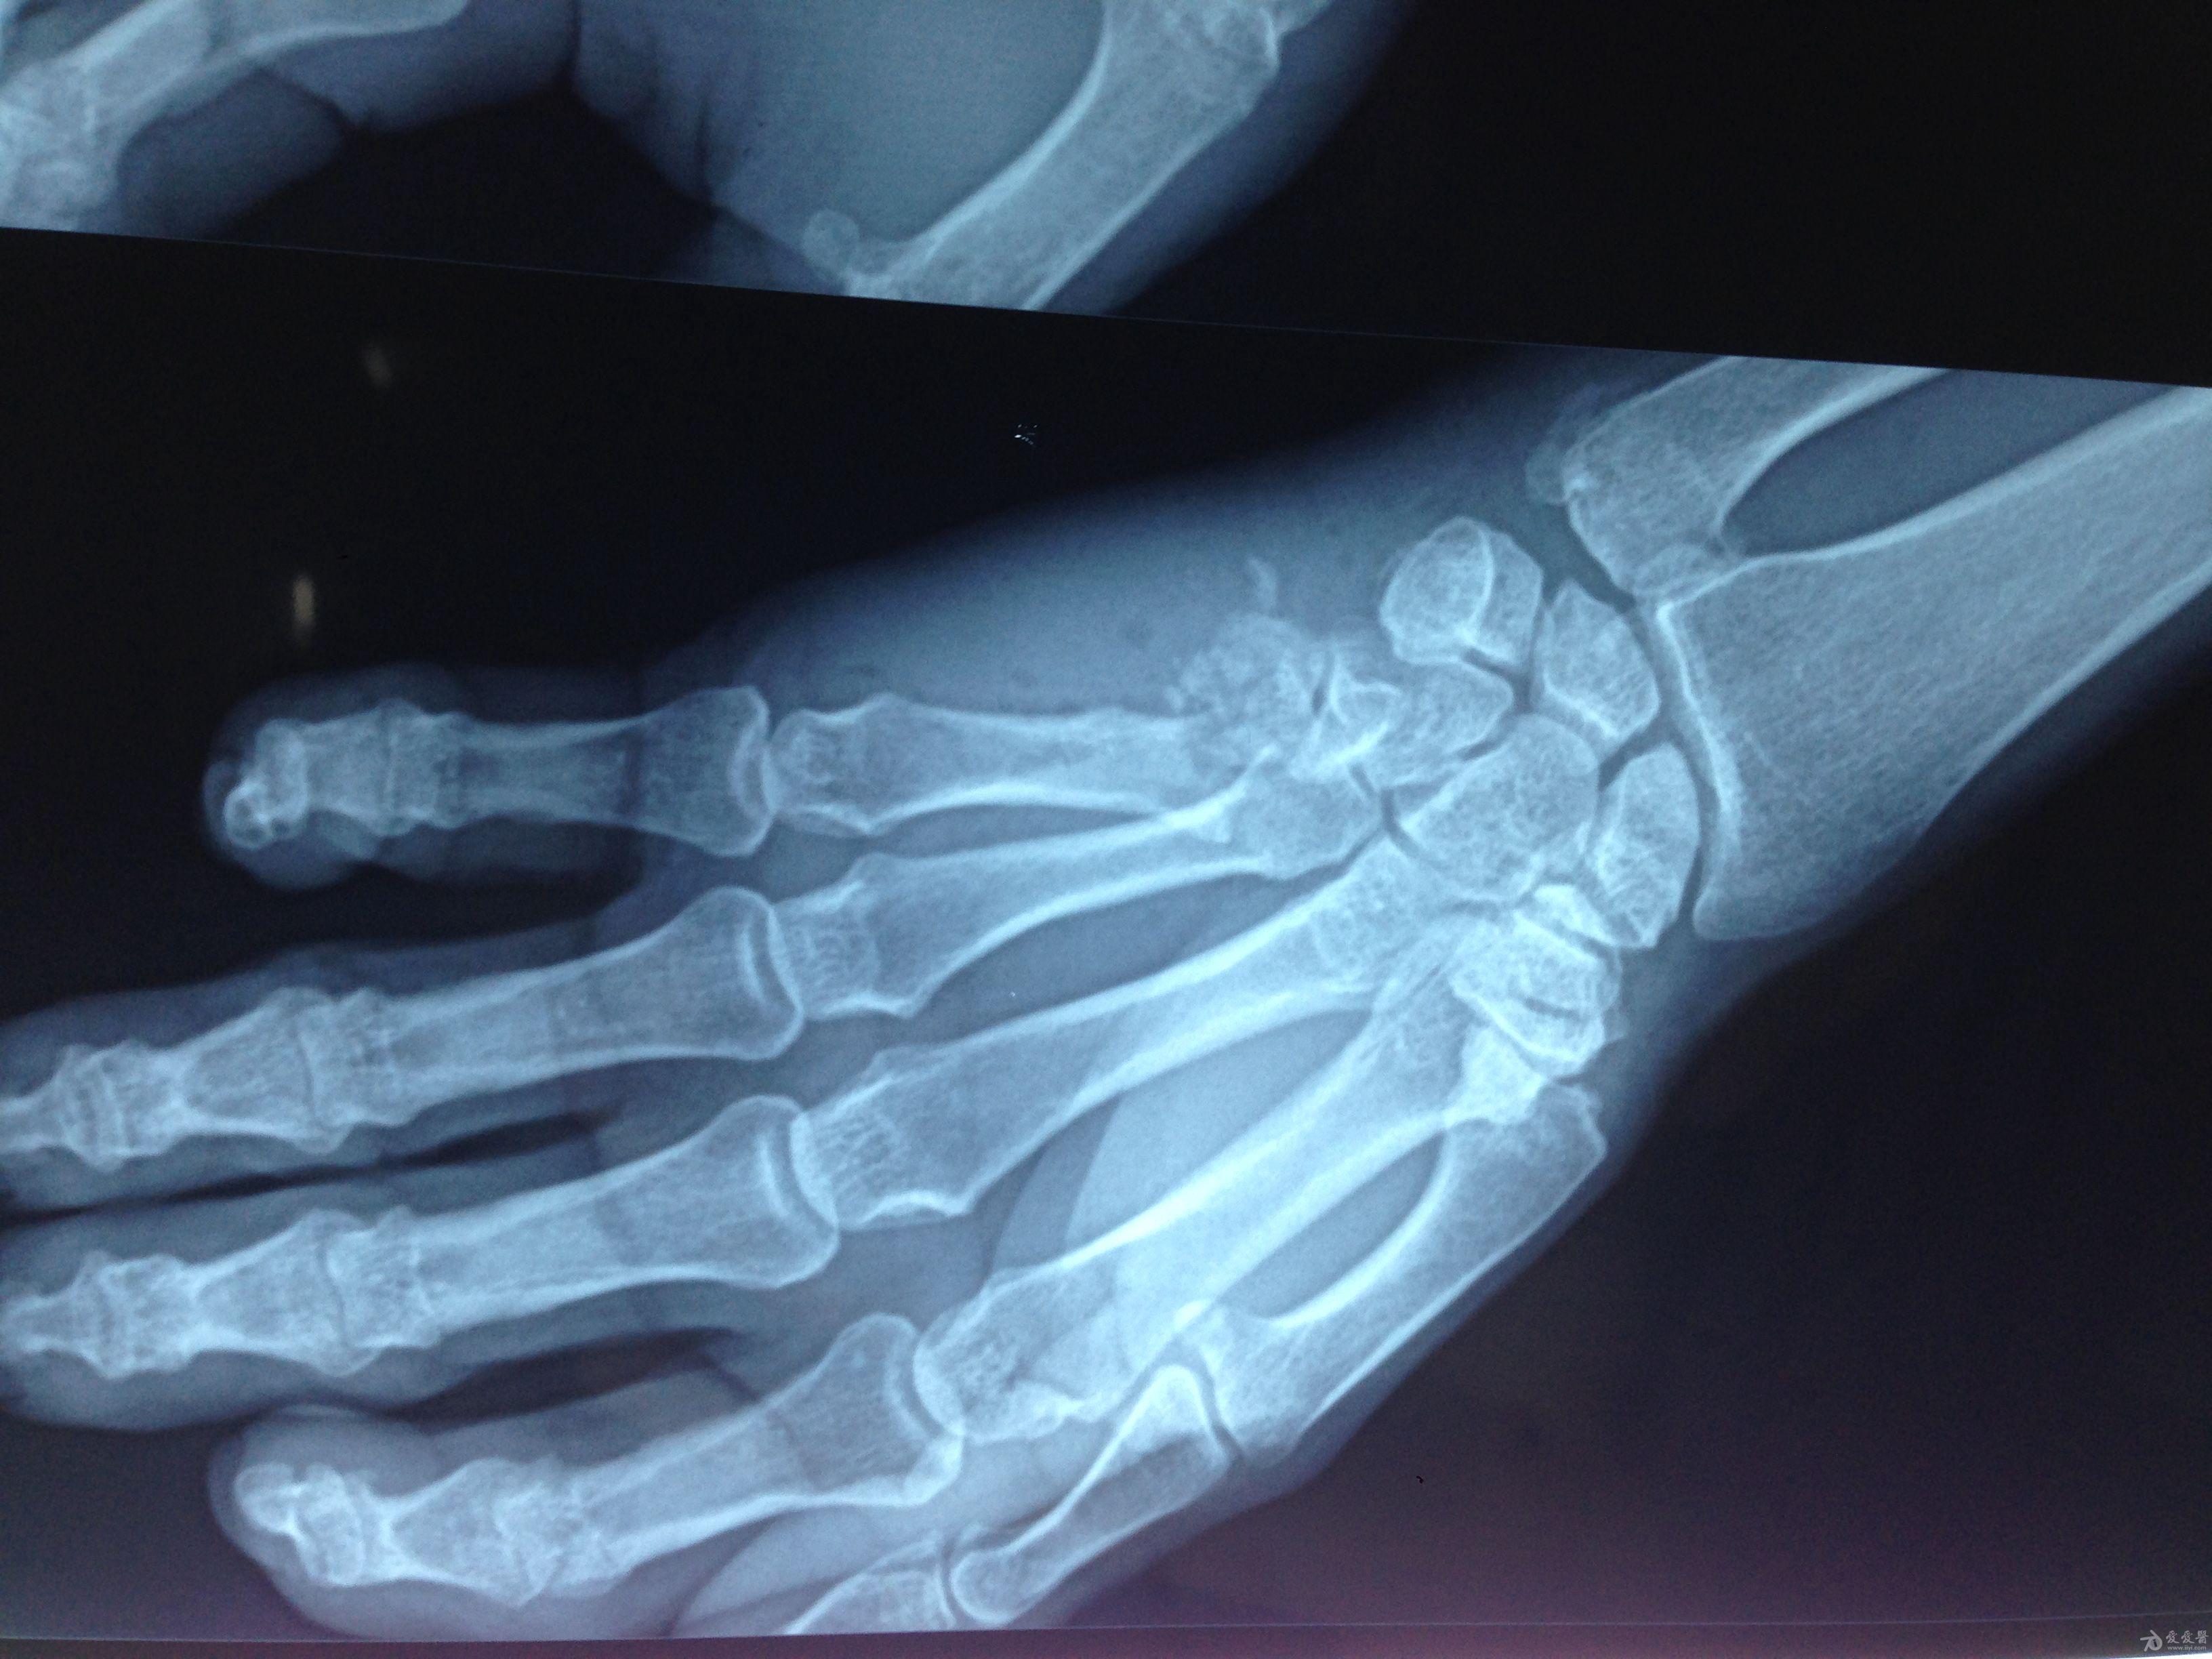 左手掌第5掌骨基底部粉碎性骨折